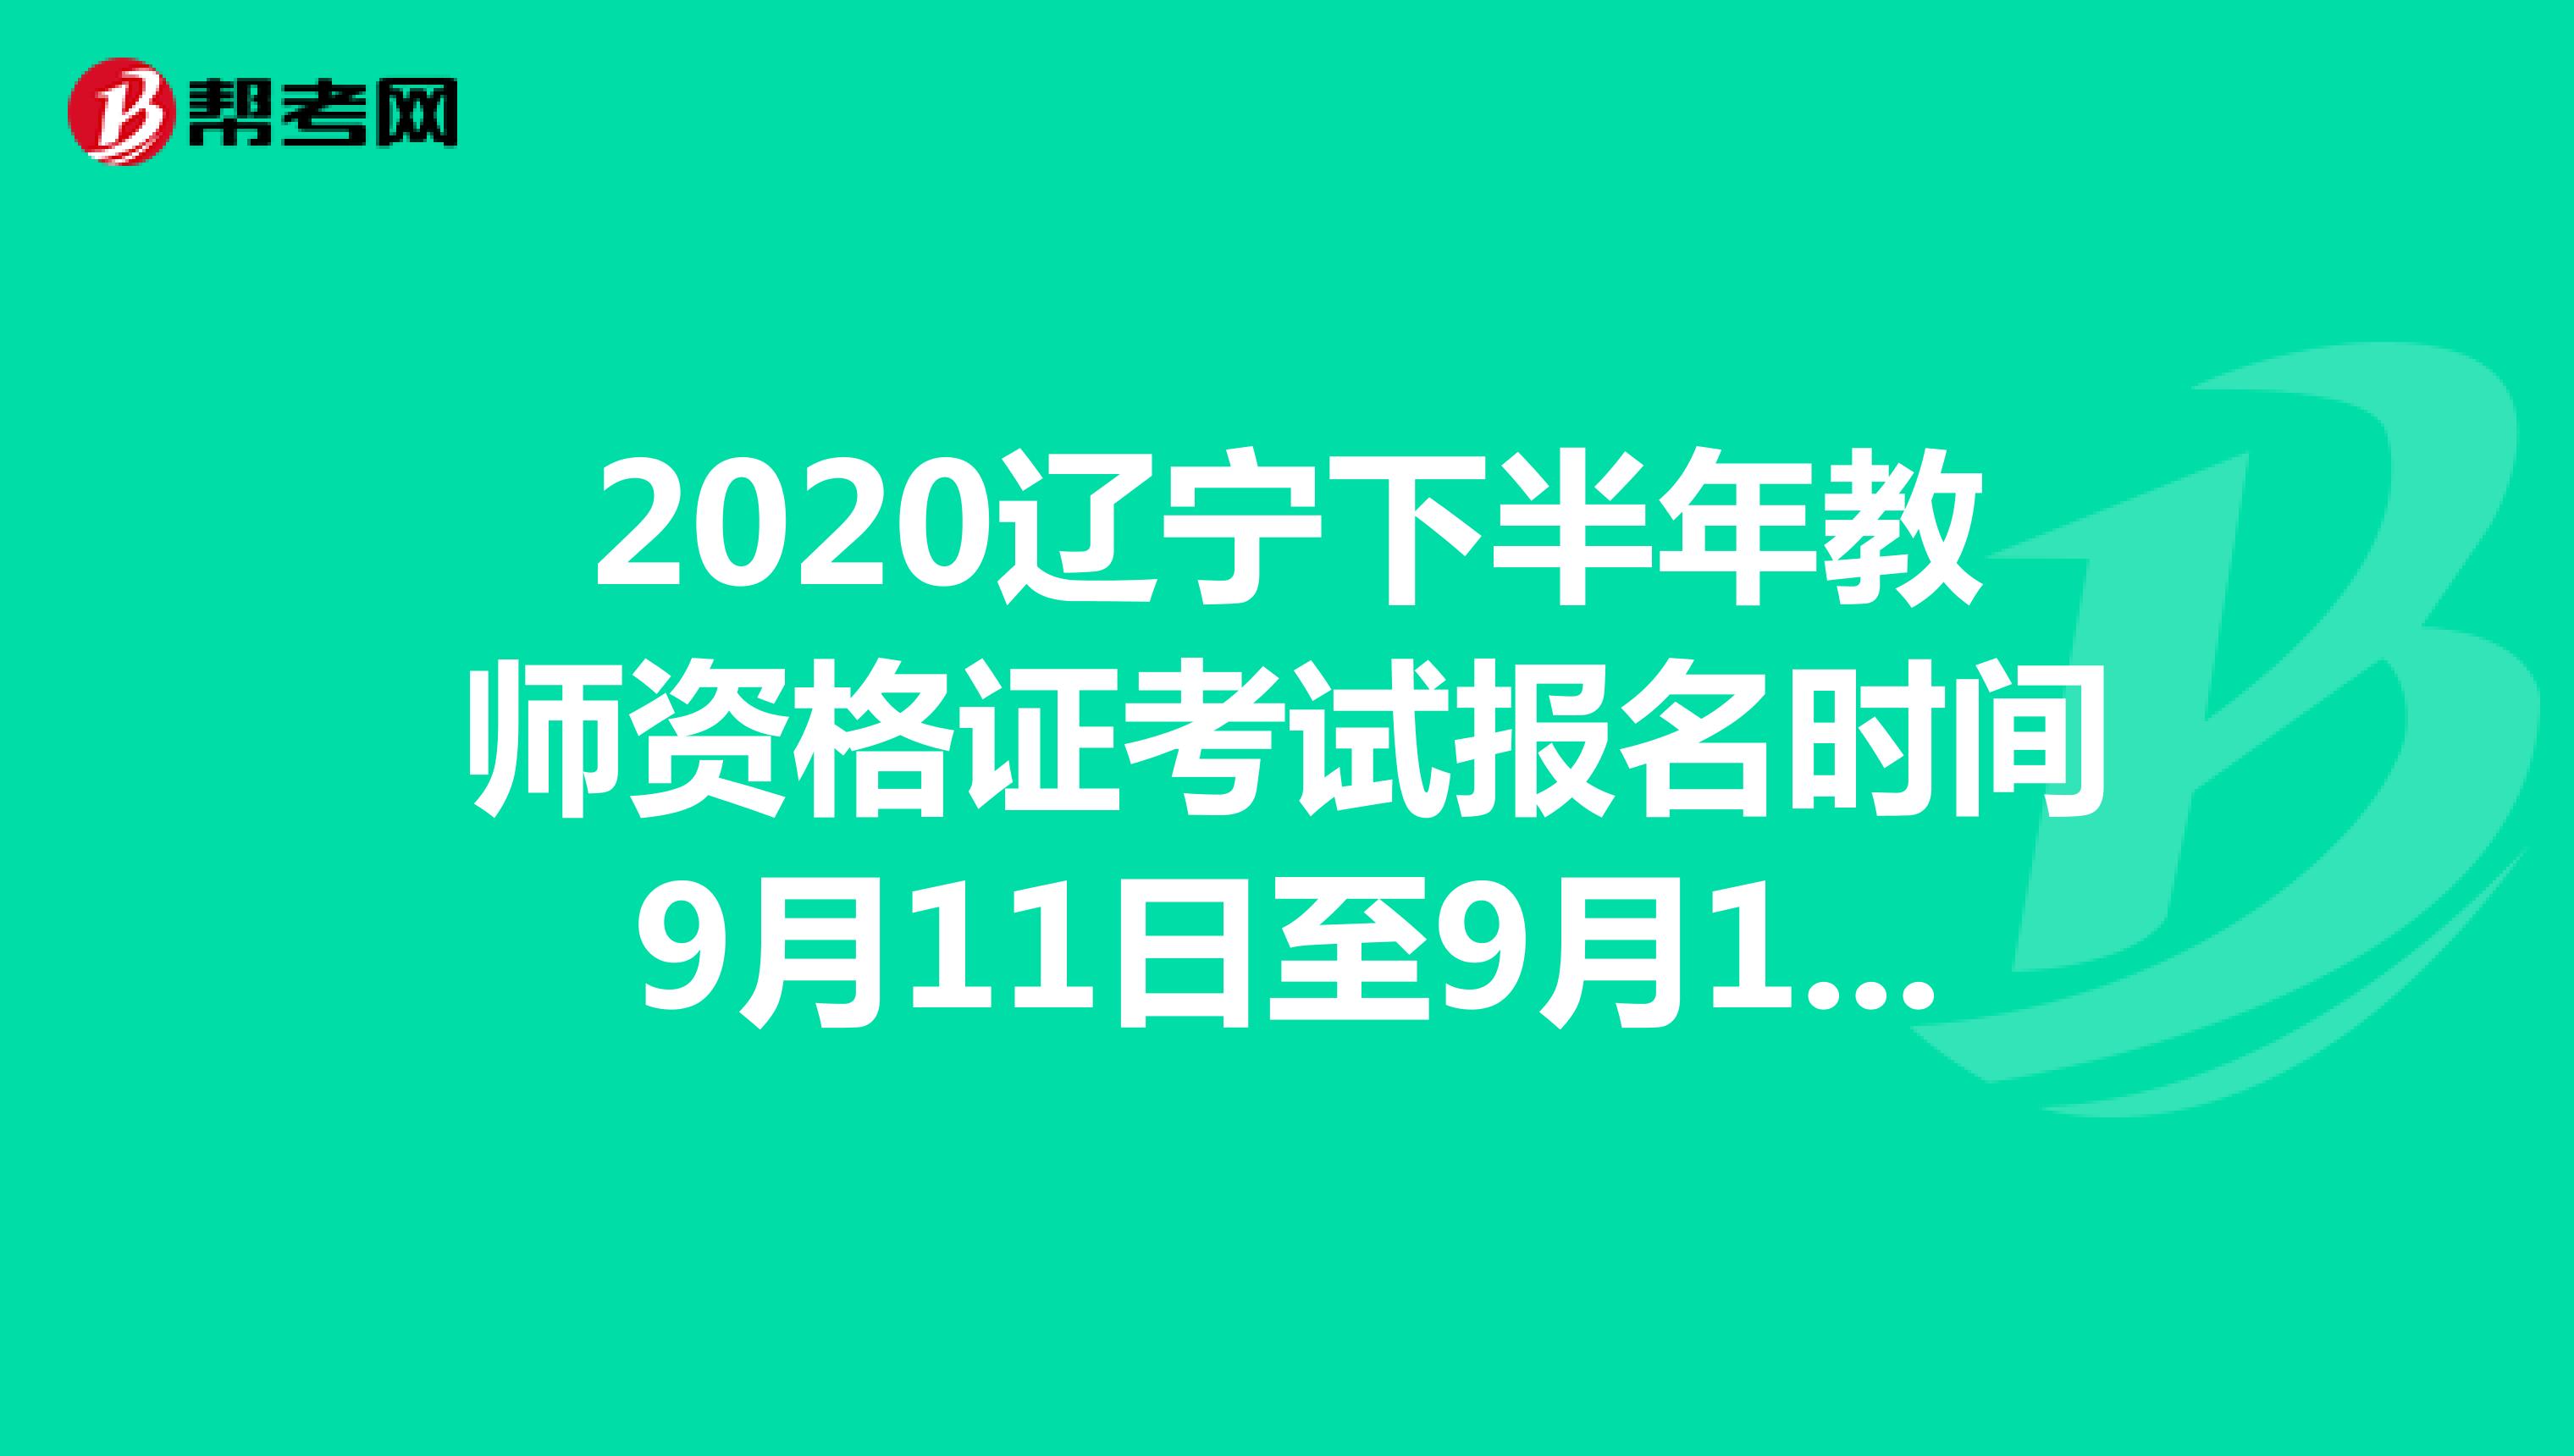 2020辽宁下半年教师资格证考试报名时间9月11日至9月14日